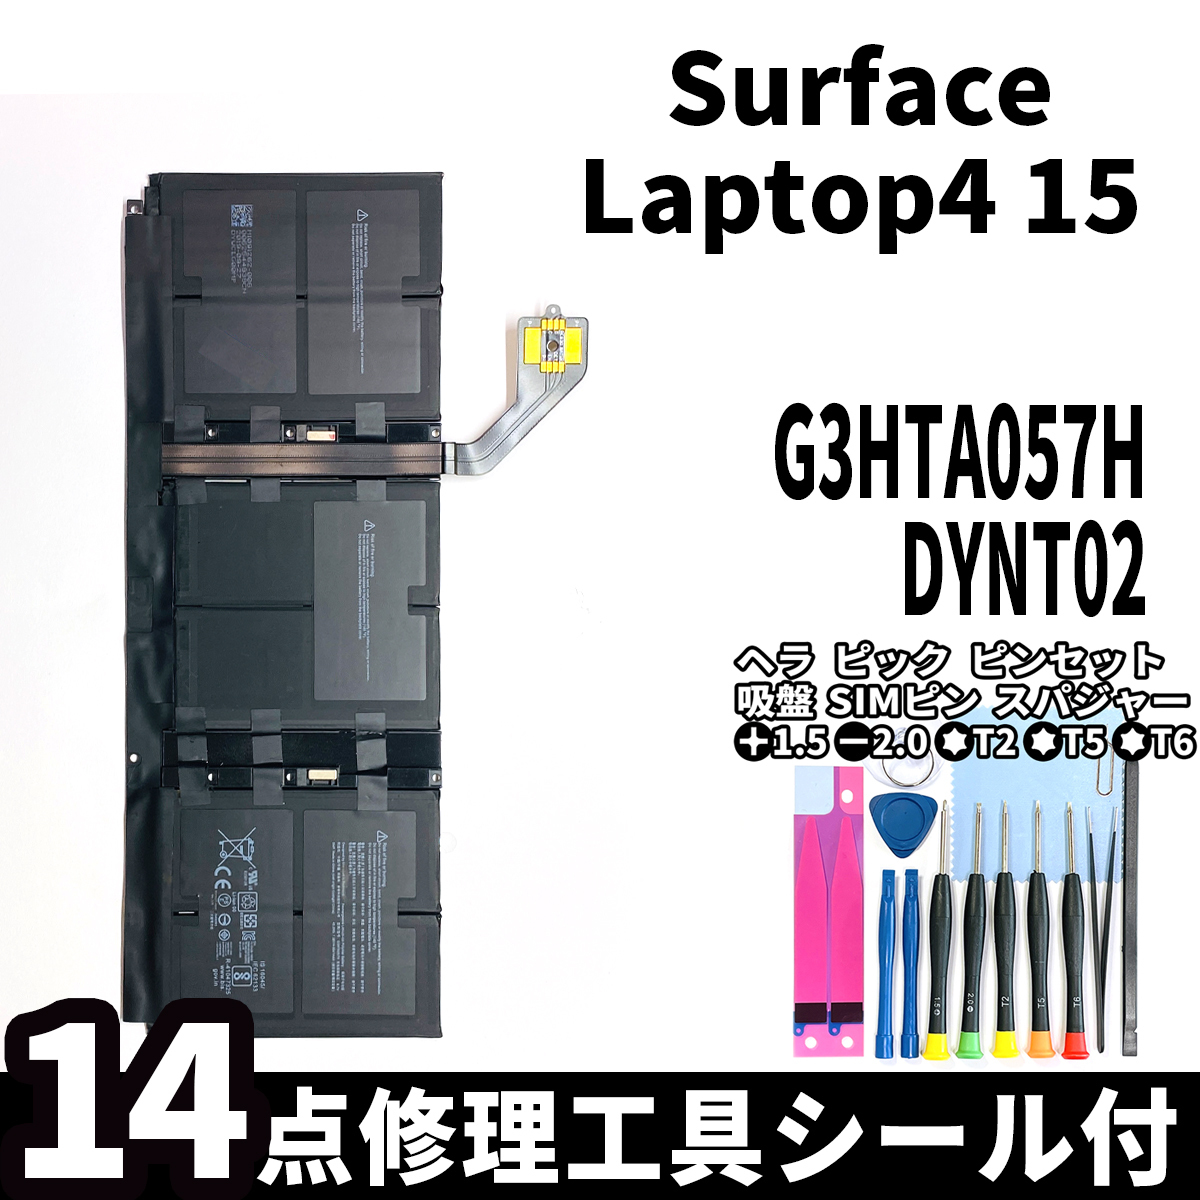 国内即日発送!純正新品!Surface Laptop4 15 バッテリー G3HTA057H DYNT02 電池パック交換 本体用内蔵battery 両面テープ 修理工具付